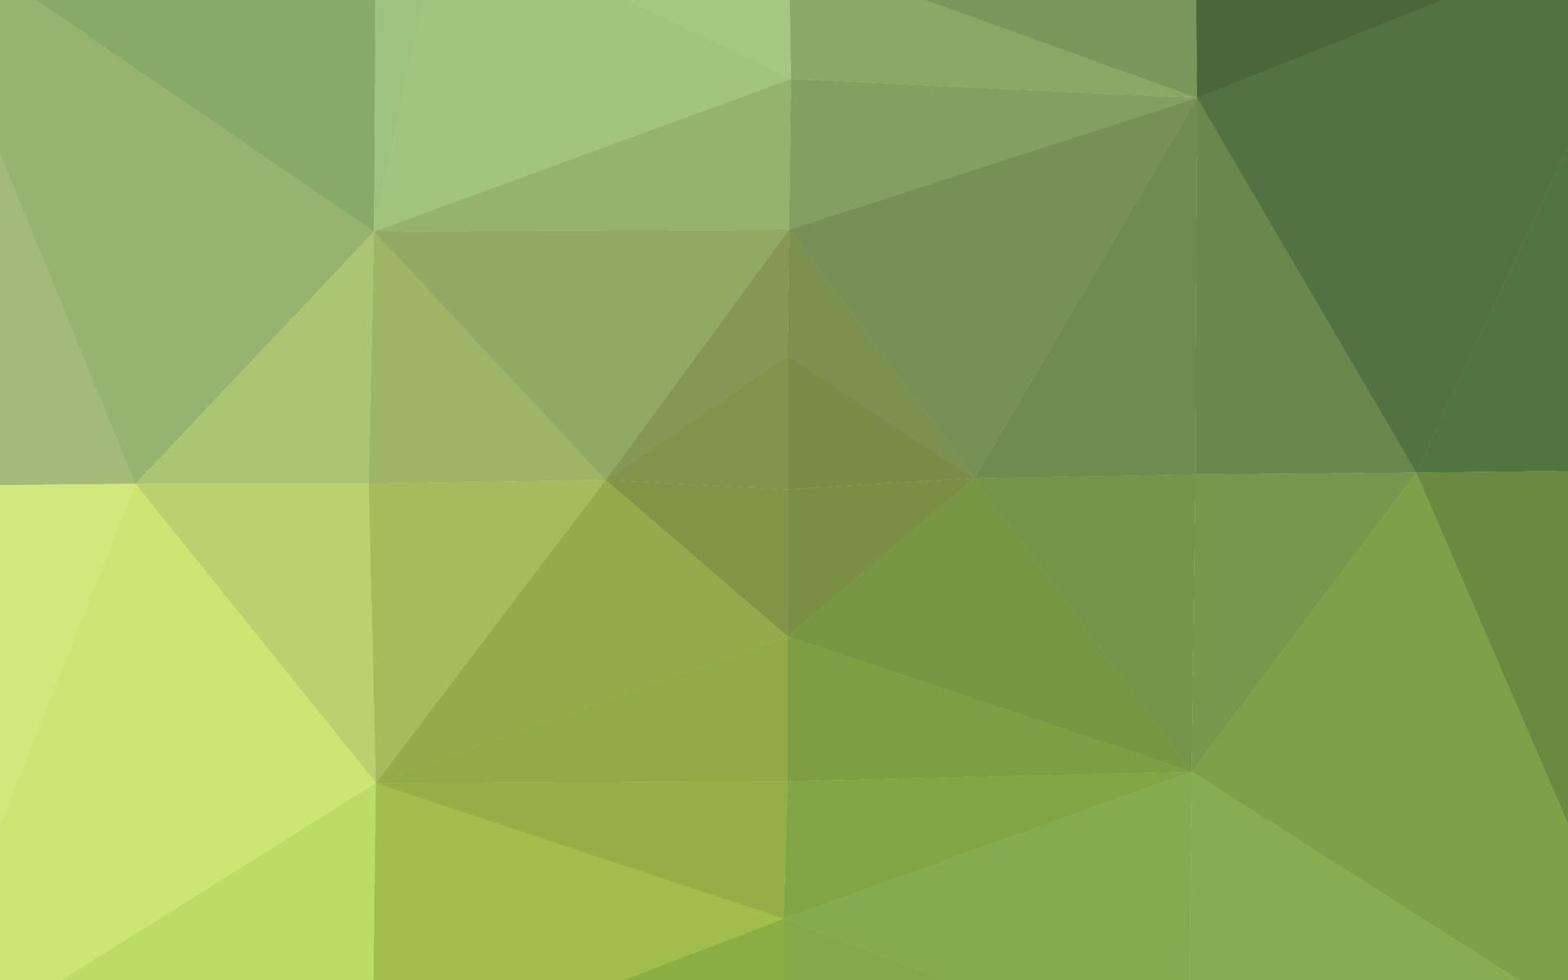 mise en page abstraite de polygone vecteur vert clair, jaune.